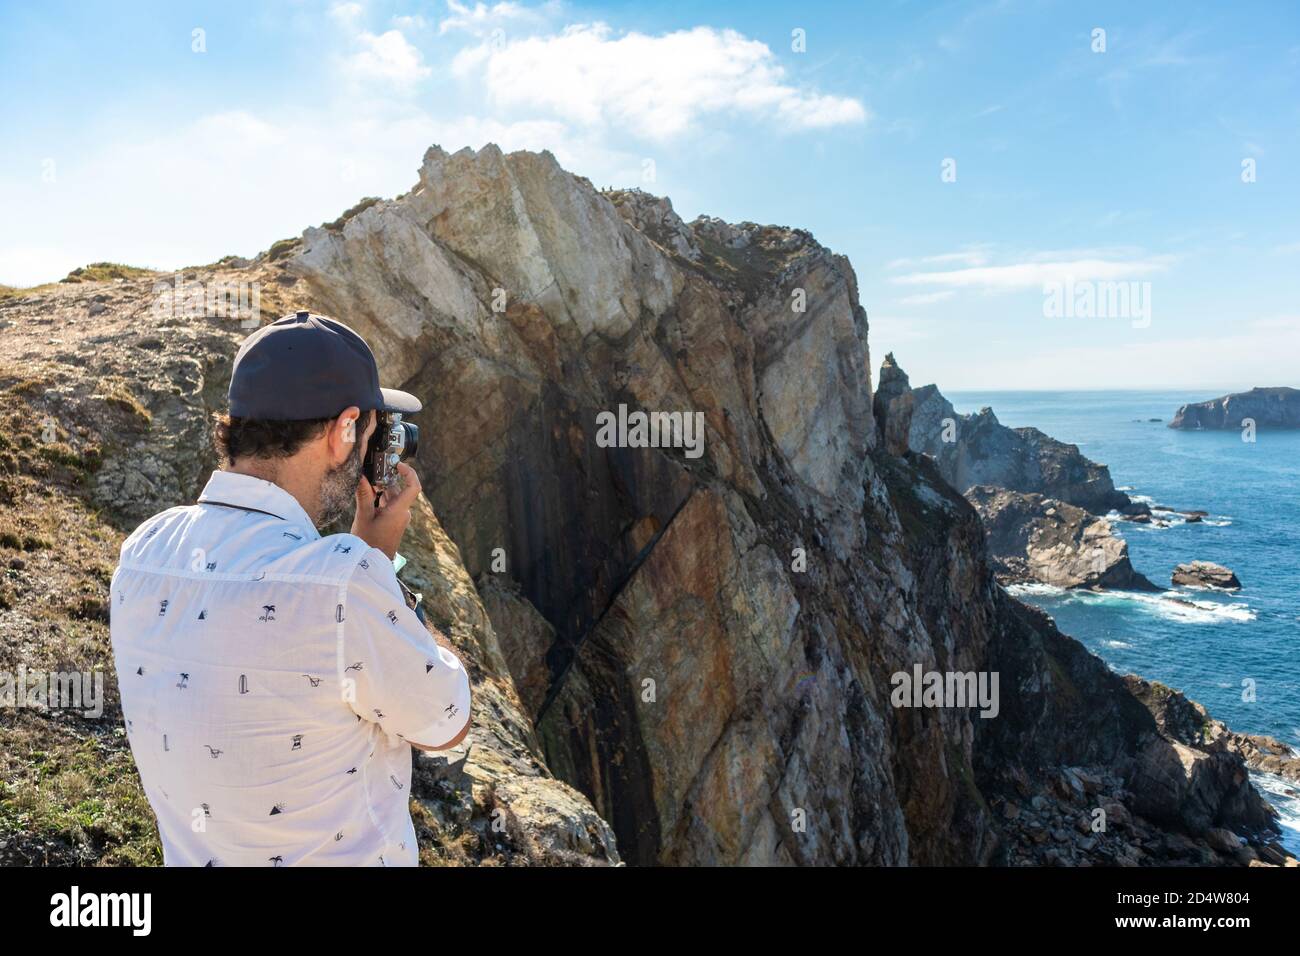 Turista masculino tomando fotos del océano en la cima de un acantilado  alto. Utiliza una cámara fotográfica de estilo retro. Horario de verano.  Cabo Peñas (Cabo de Peñas Fotografía de stock -